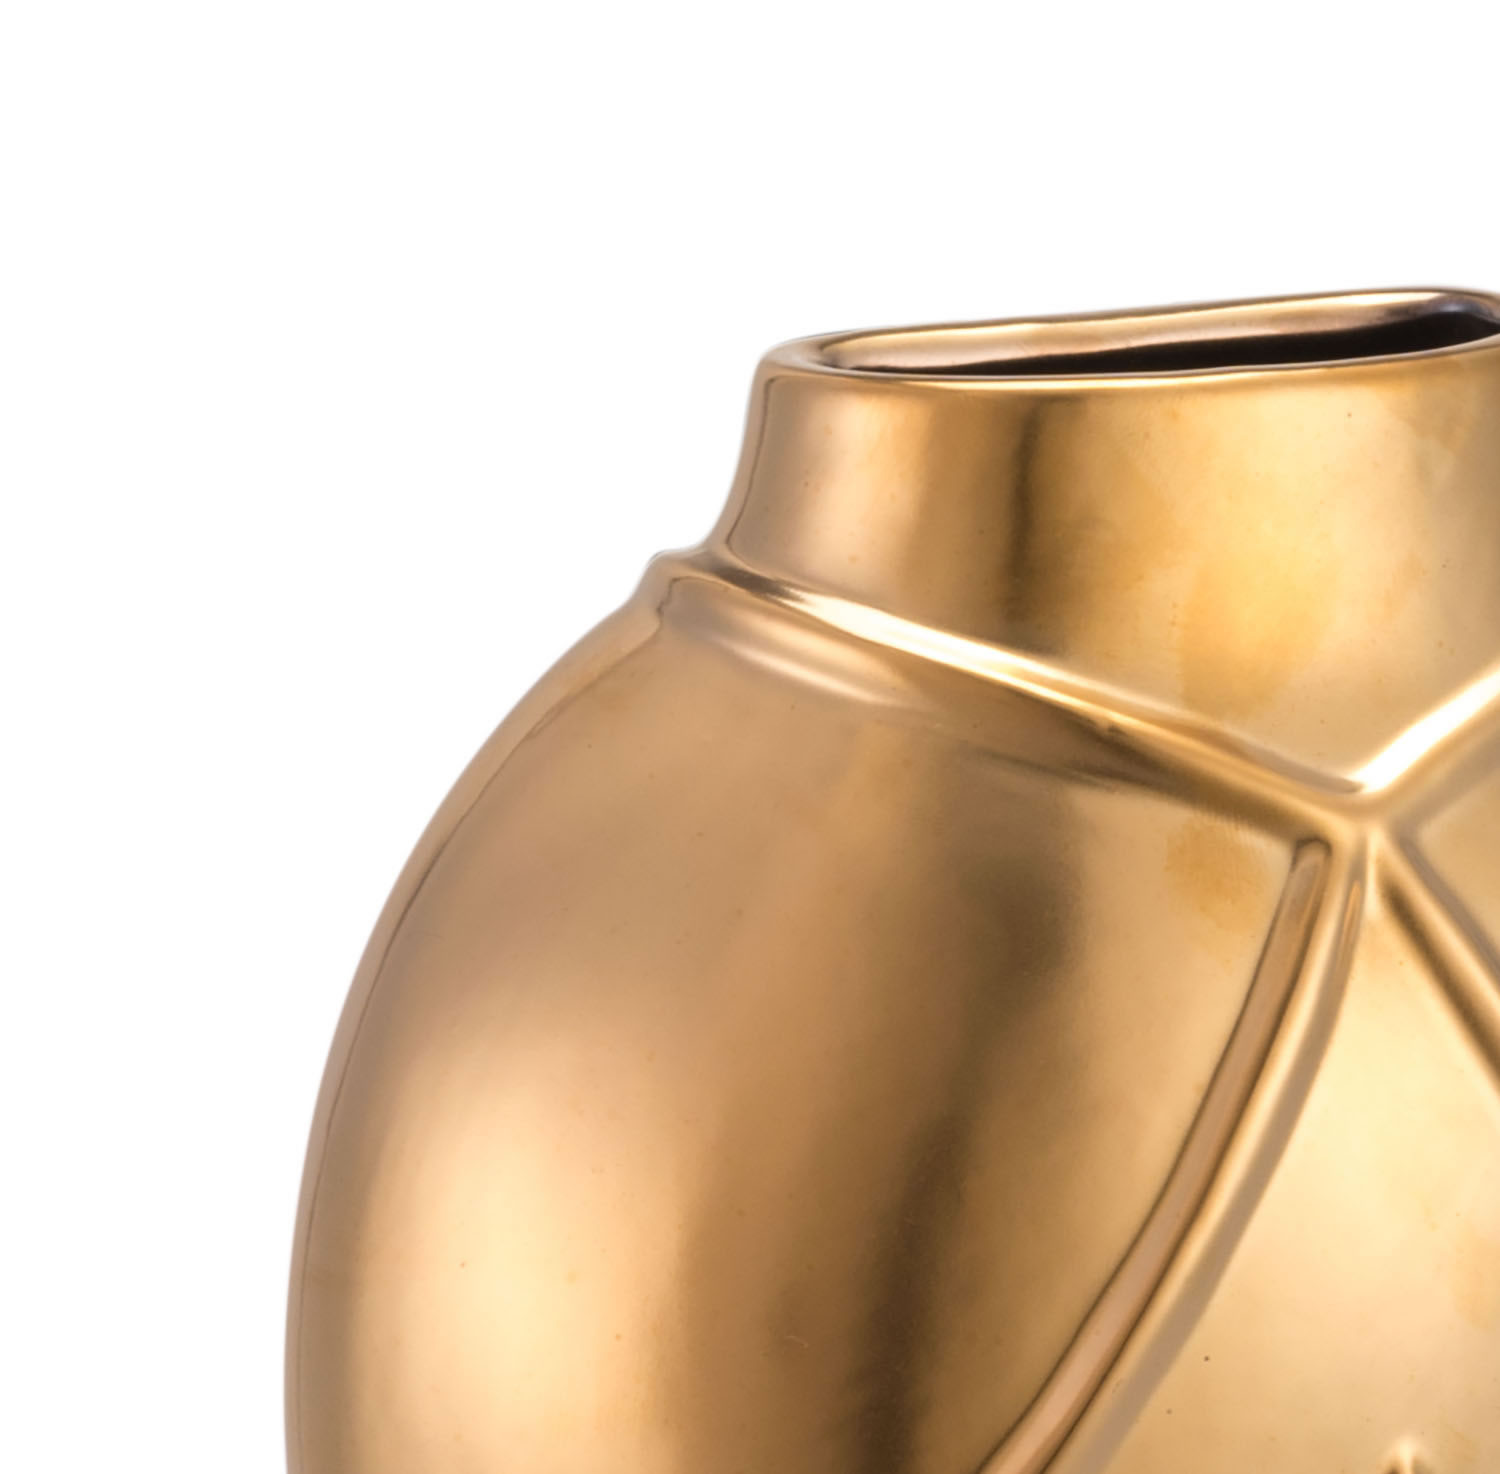 2.8" x 6.1" x 8.1" Matte Gold, Stoneware, Rayas Wall Vase